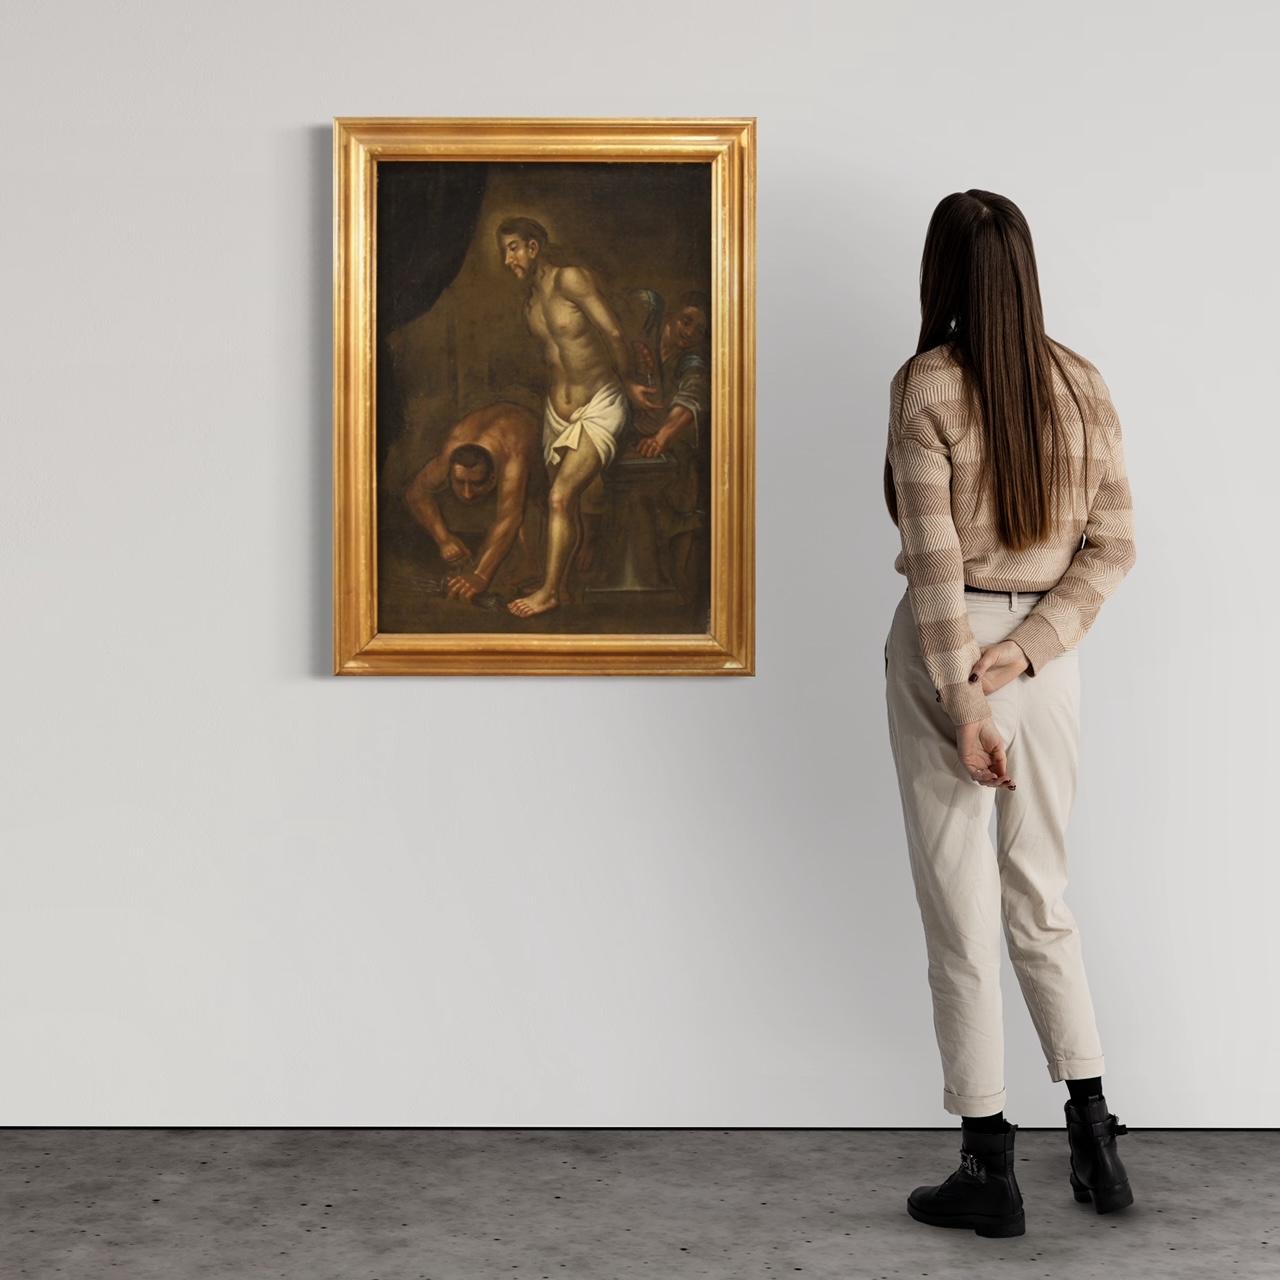 Peinture italienne ancienne du début du 18e siècle. Huile sur toile représentant un sujet religieux, le Christ à la colonne, de bonne qualité picturale. Peinture de belle taille et d'impact, pour antiquaires et collectionneurs d'art sacré ancien.